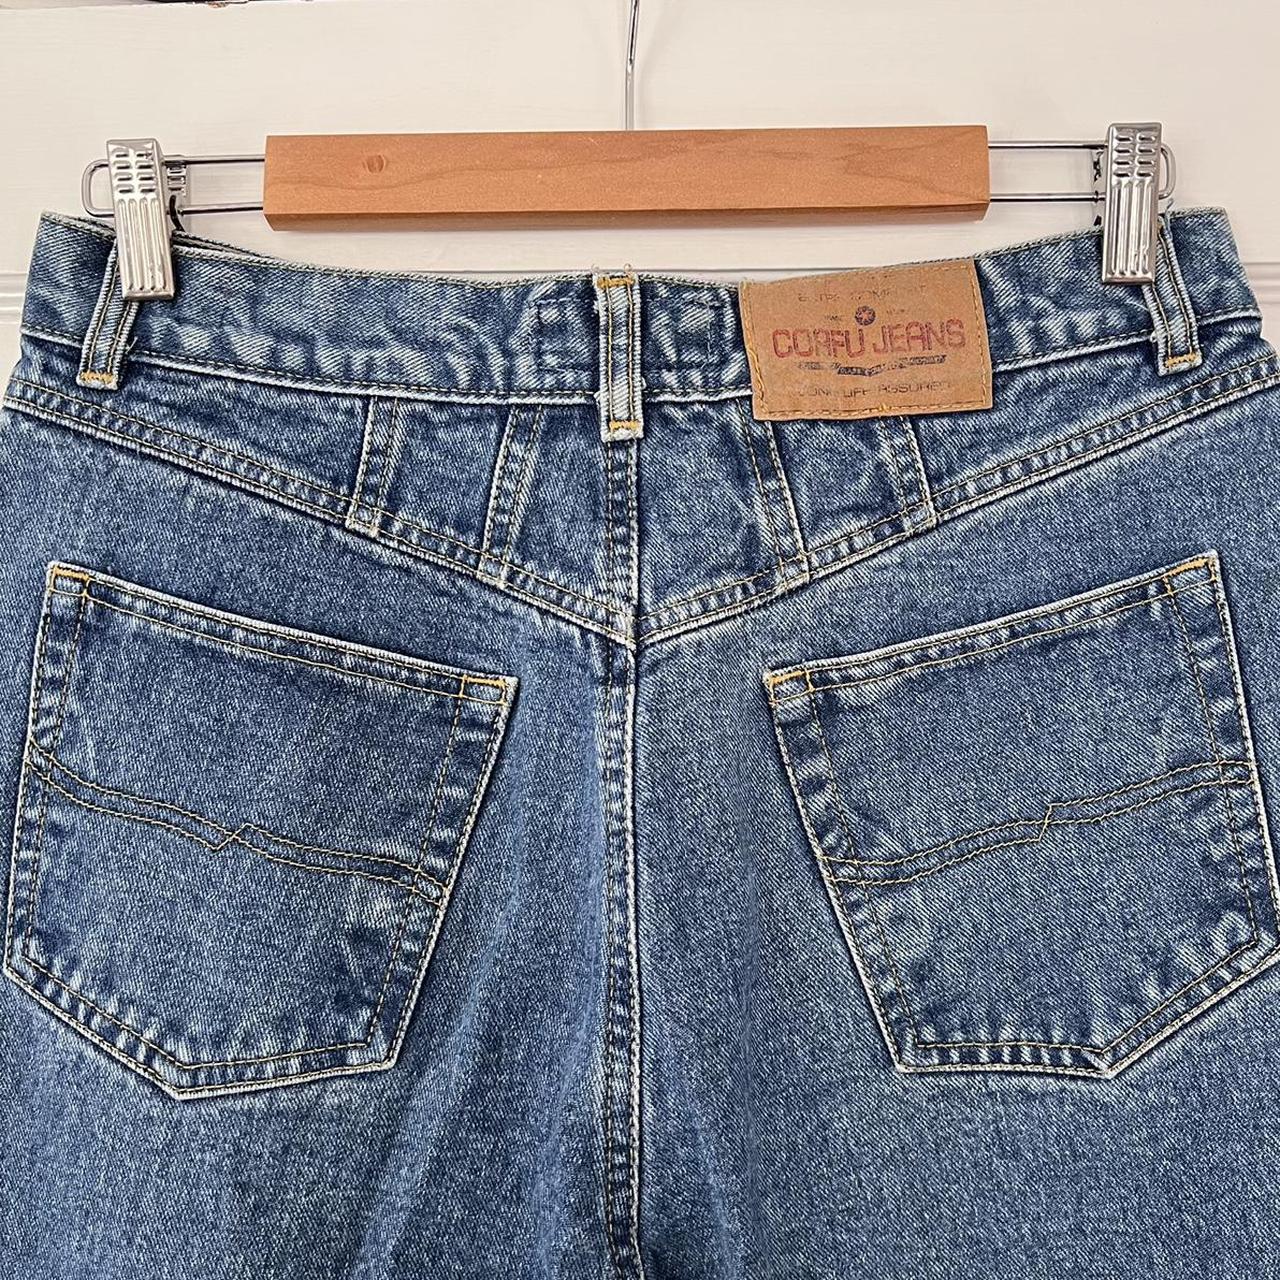 Blue wash corfu jeans Have the coolest details Size... - Depop